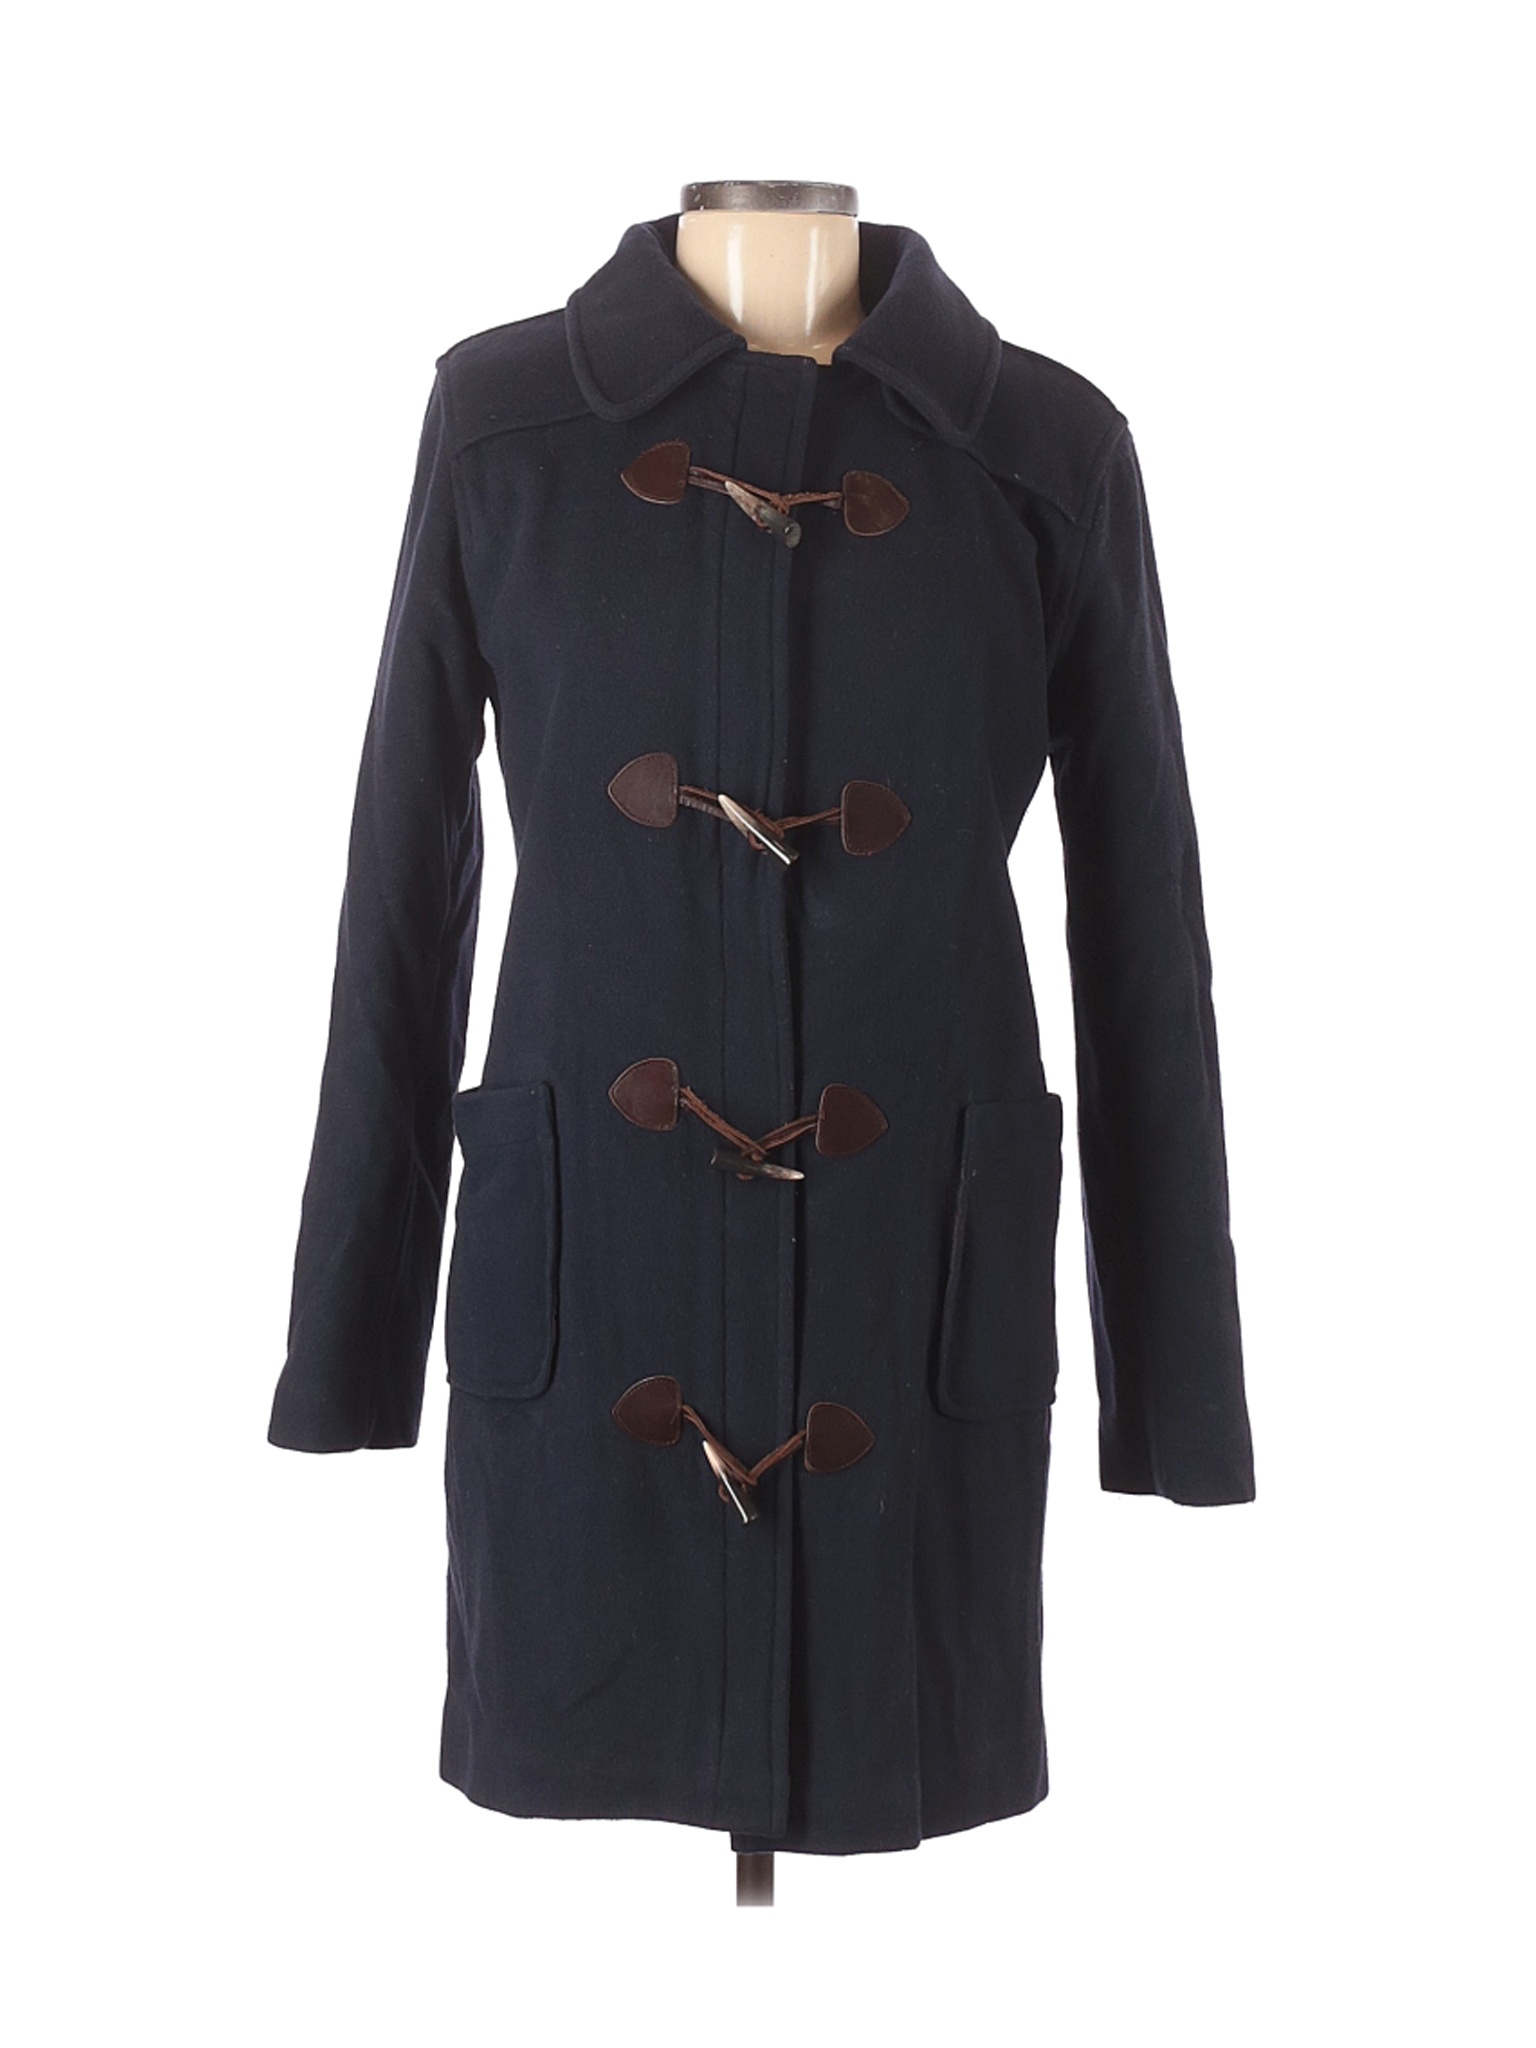 Tommy Hilfiger Women Black Wool Coat M | eBay